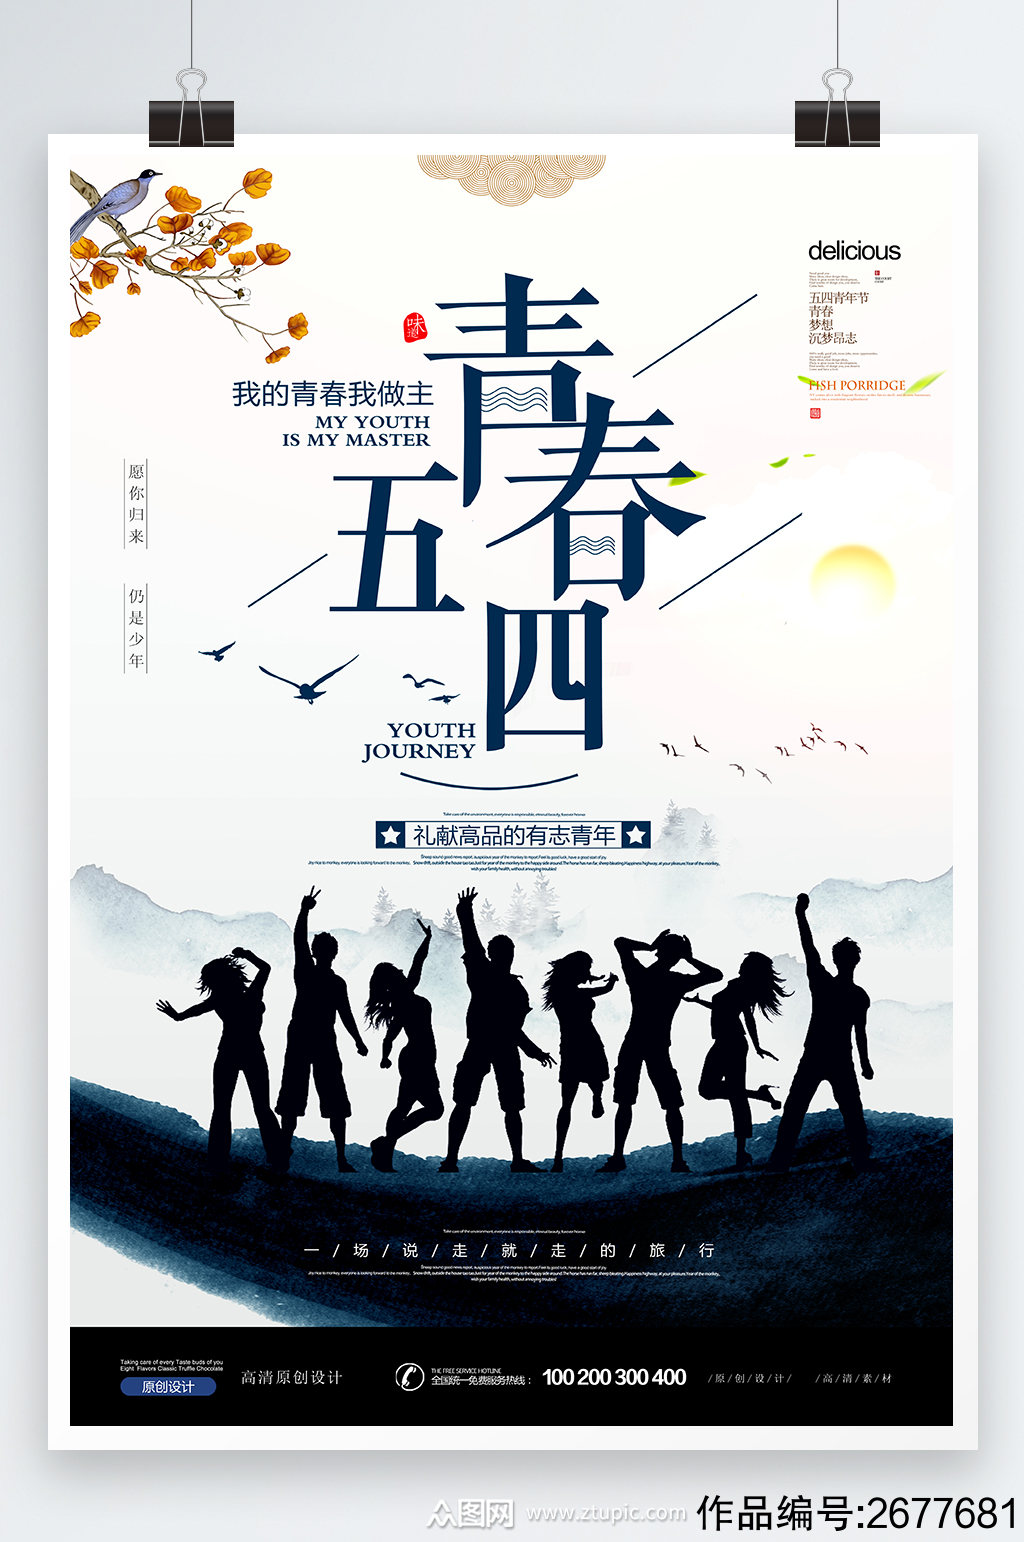 五四青年节青春梦想设计海报素材